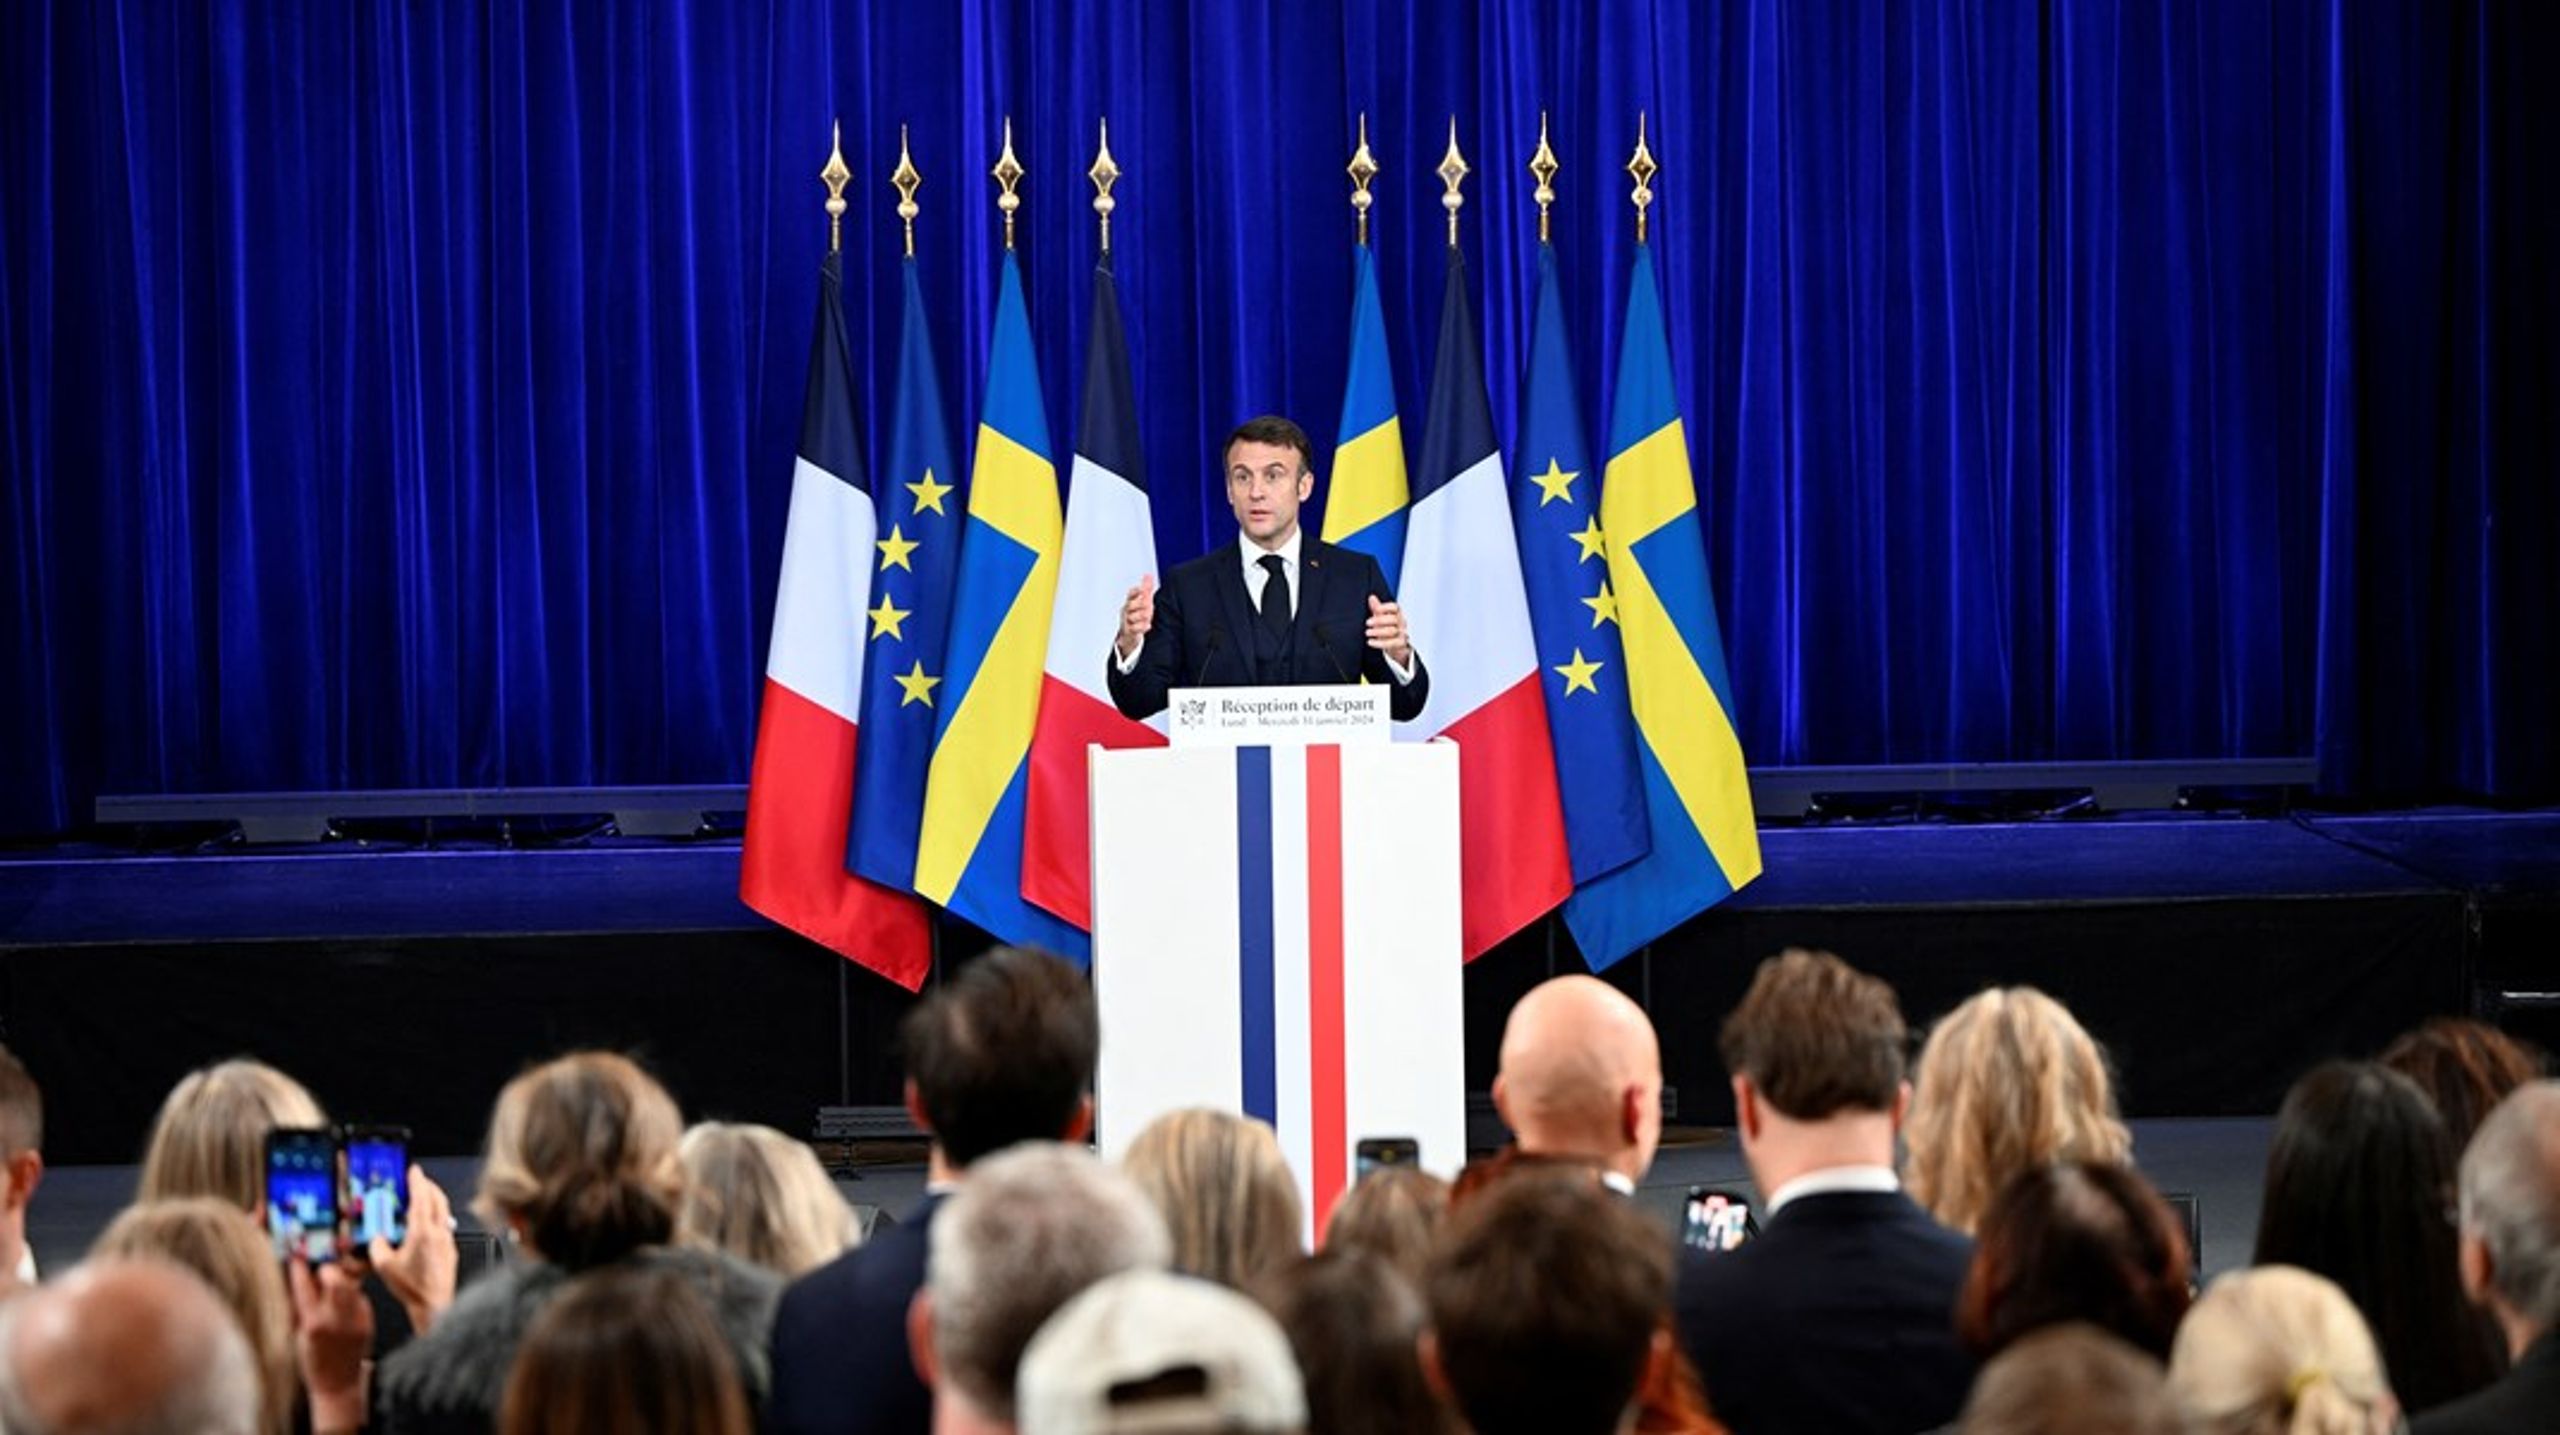 Frankrikes president Emmanuel Macron har denne uken vært på besøk i Sverige.&nbsp;I tillegg til en rekke arrangementer i Stockholm, reiste han også til Lund, der han holdt et innlegg og svarte på spørsmål fra studentene ved Lunds universitet.